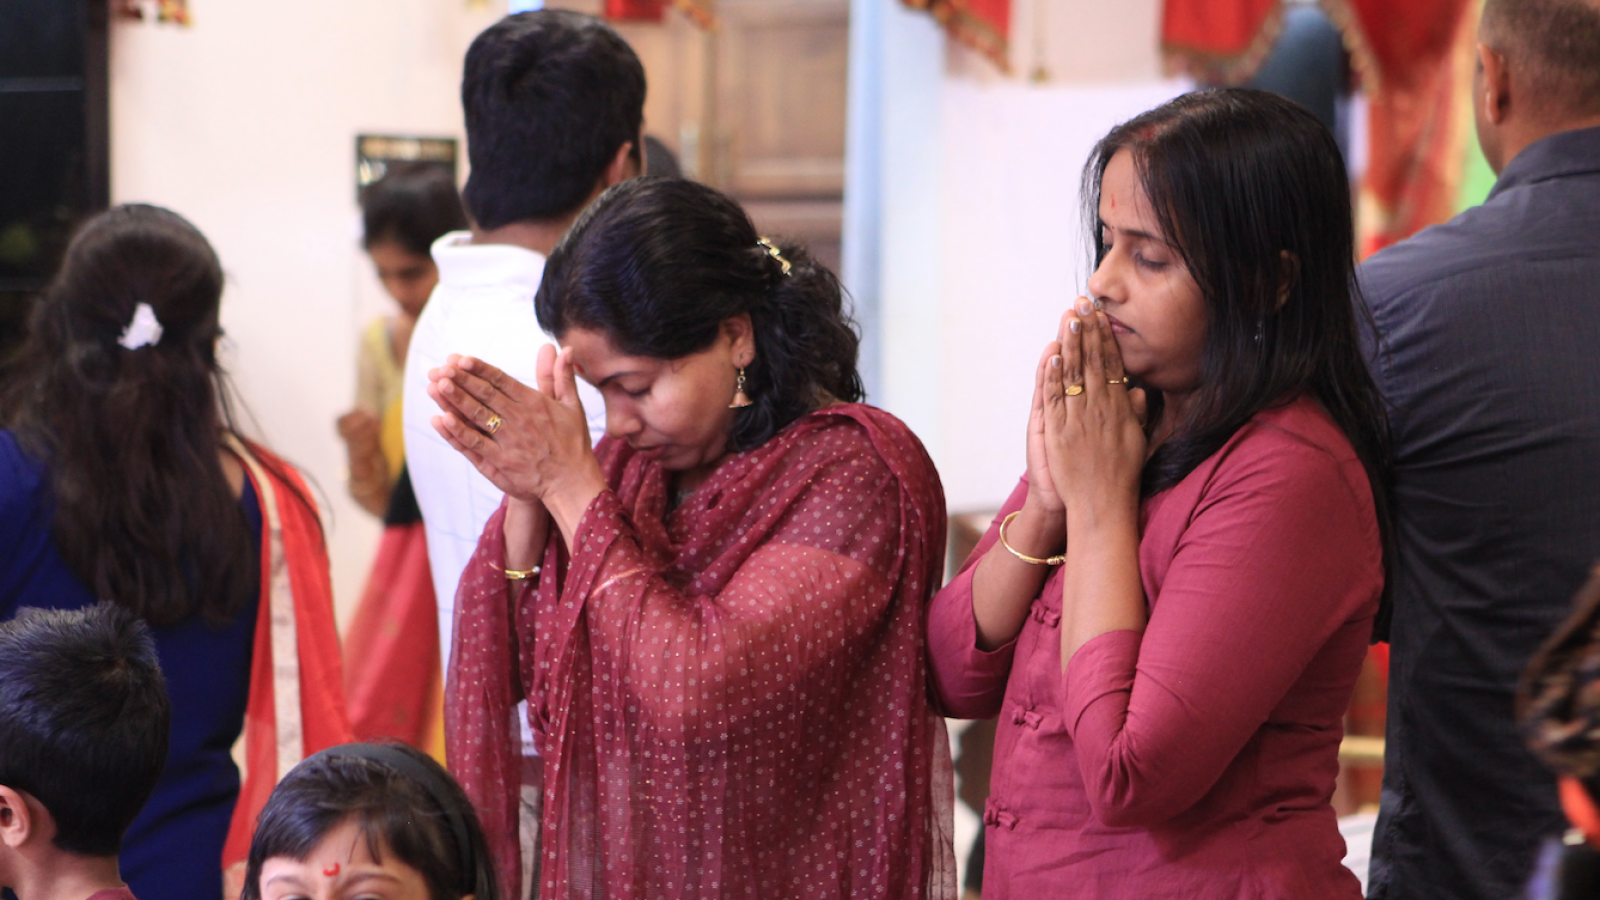 Members praying